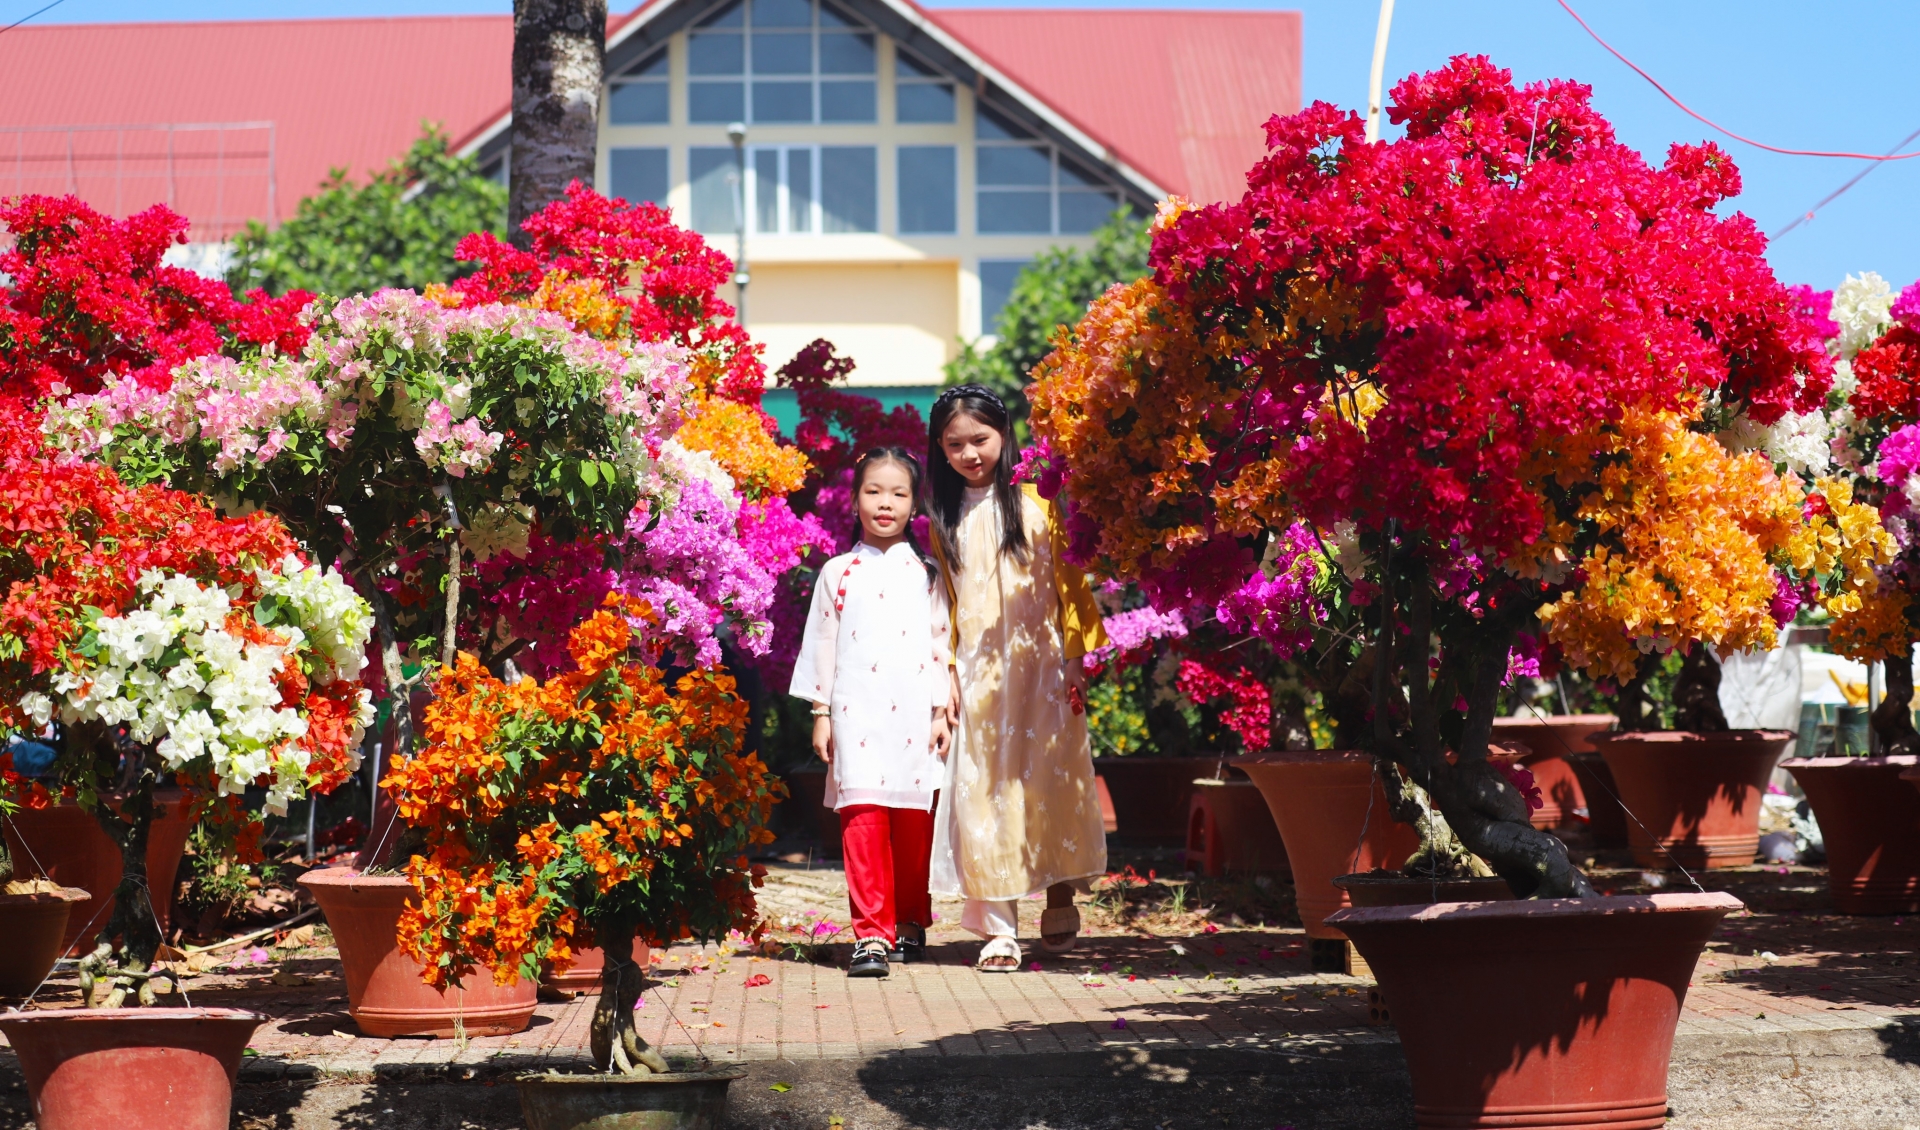 Hai chị em tạo dáng để bố mẹ chụp hình ghi lại khoảnh khắc tràn ngập sắc xuân tại chợ hoa xuân